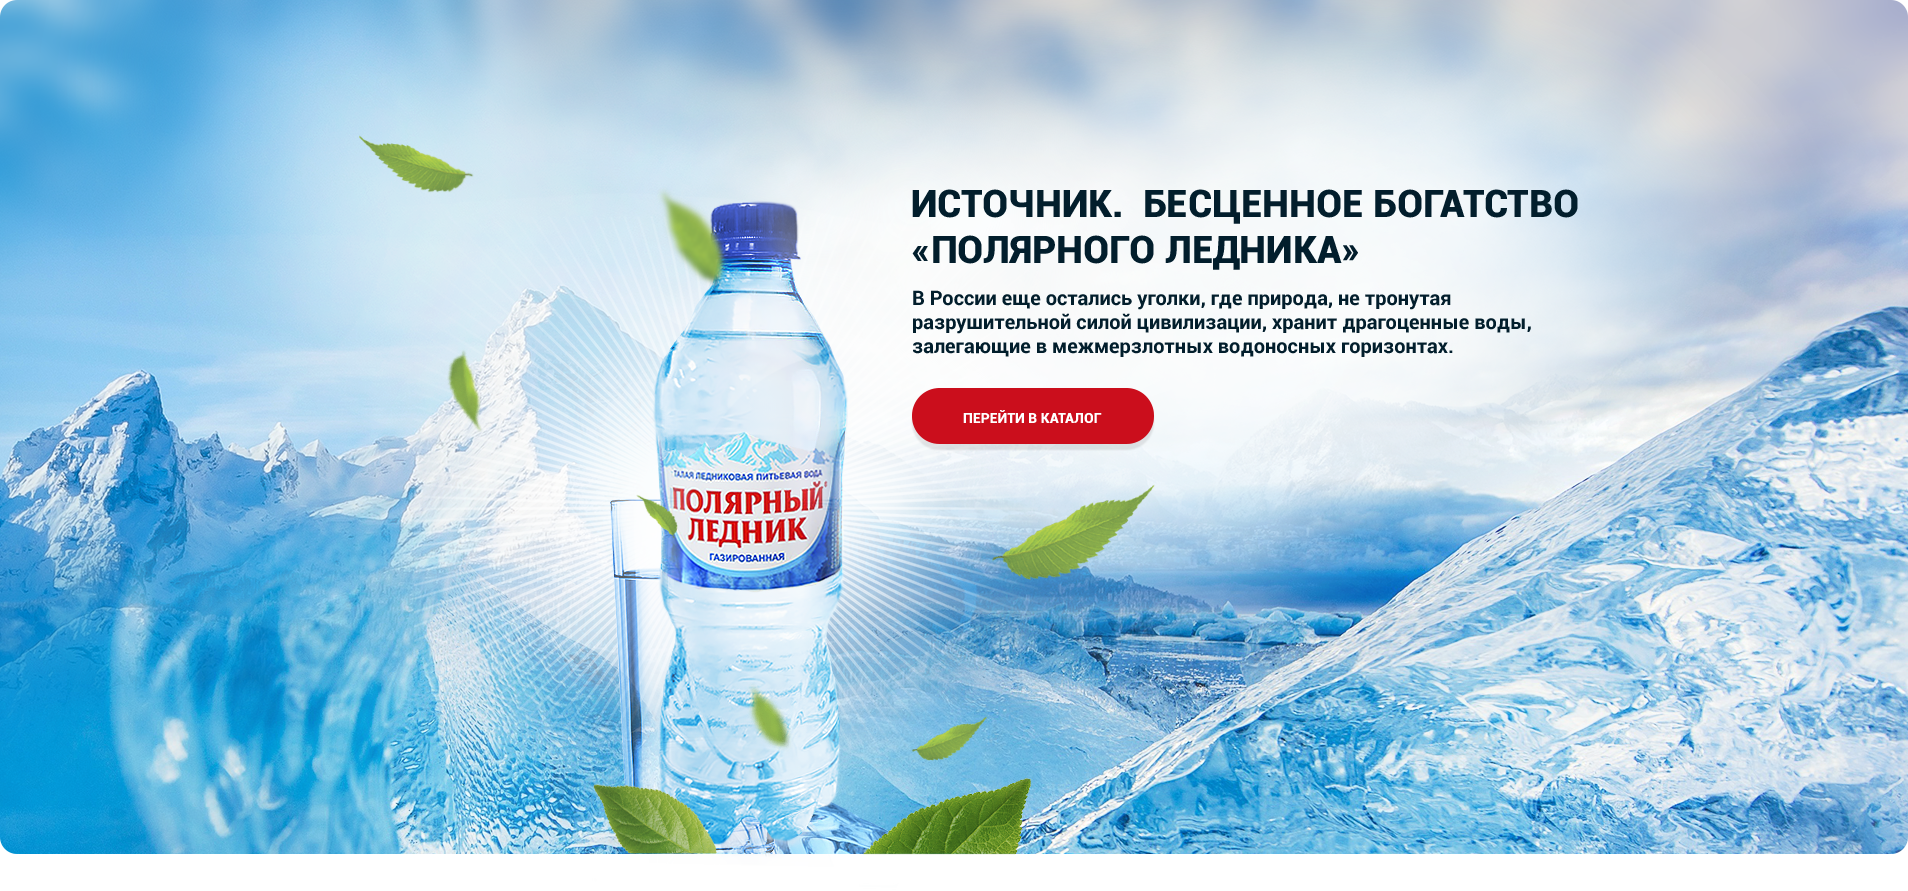 Воды россии рф. Реклама воды Байкал. Полярный ледник вода. Вода из Байкала. Реклама воды ледники.